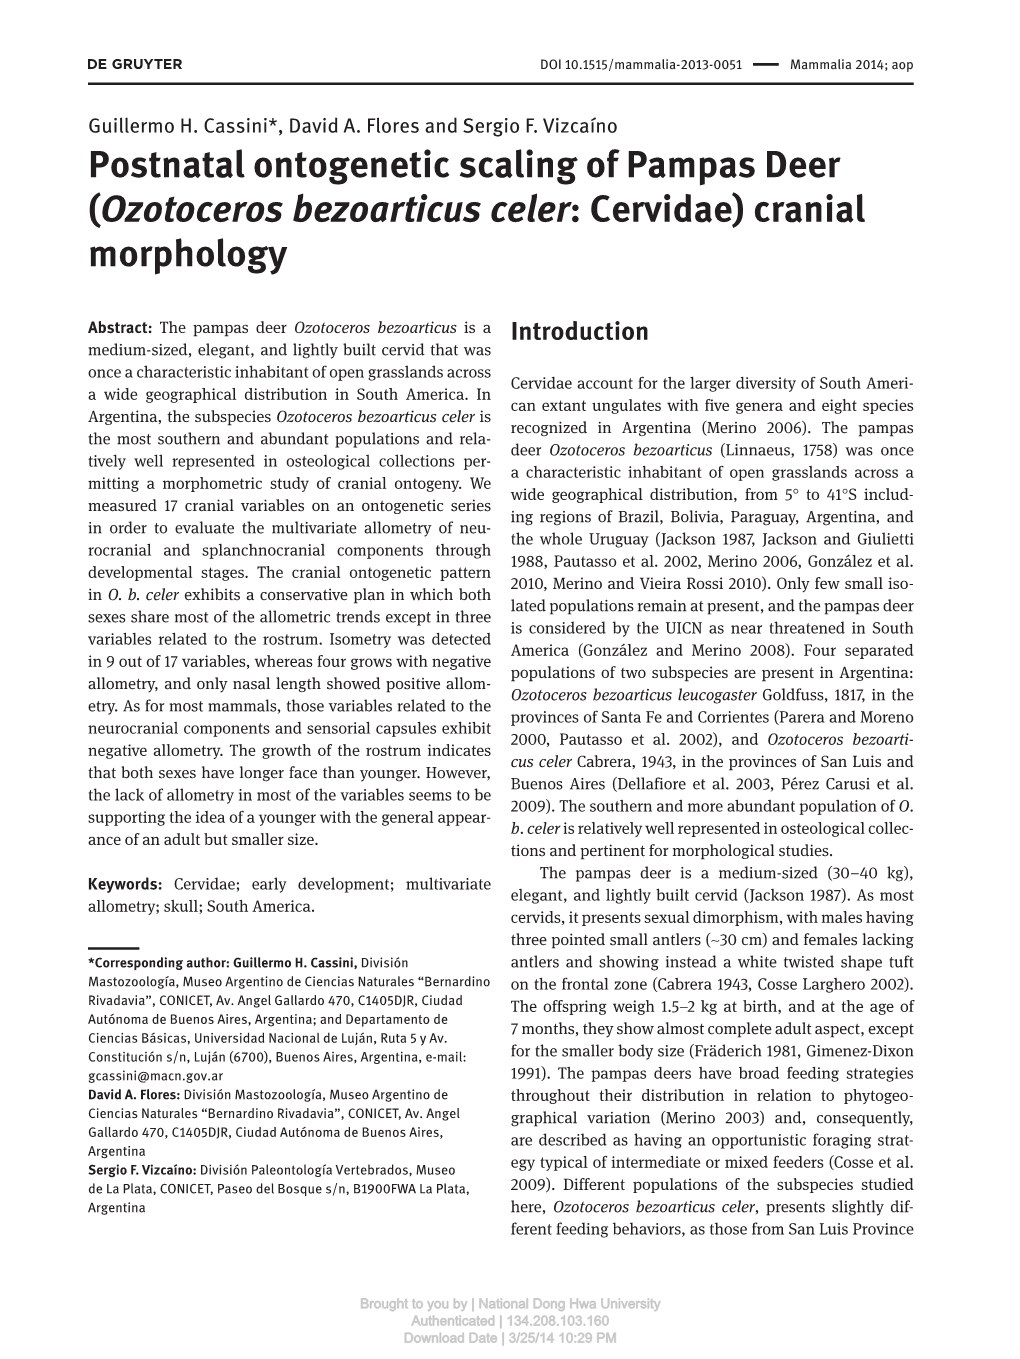 ( Ozotoceros Bezoarticus Celer: Cervidae) Cranial Morphology